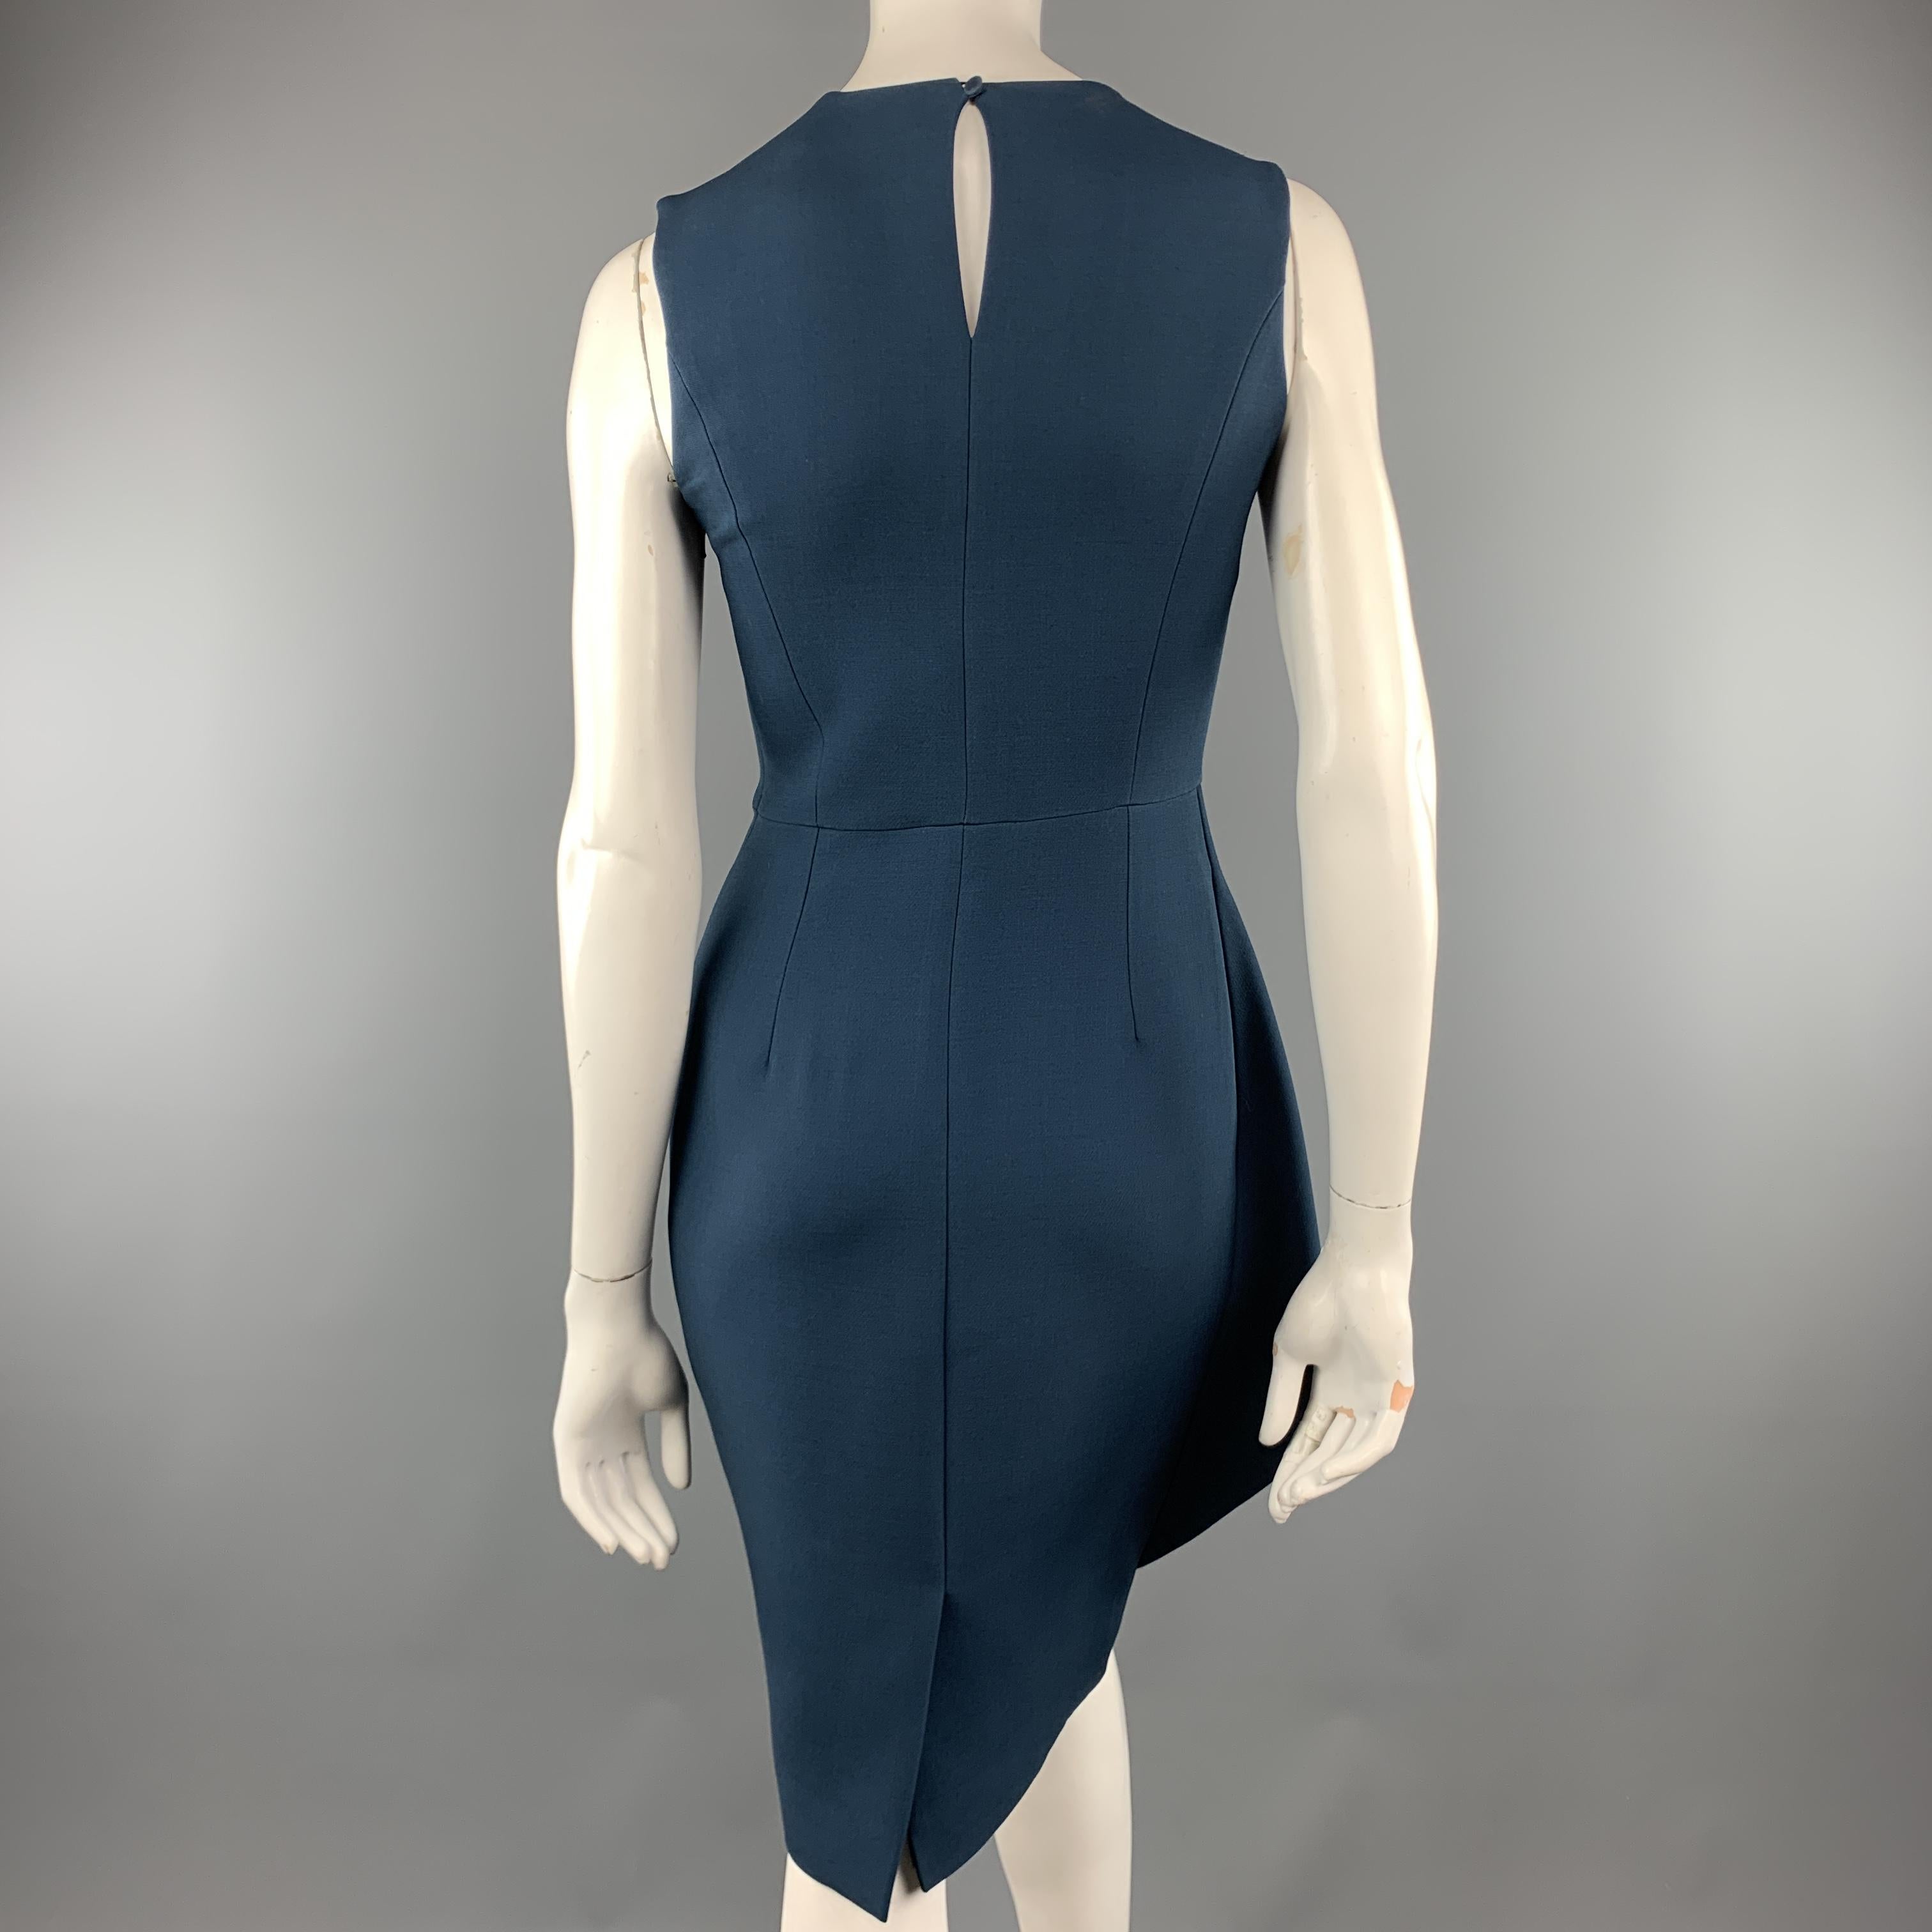 Women's CHRISTIAN DIOR Size 4 Teal Blue Wool / Silk Asymmetrical Peplum Sleeveless Dress